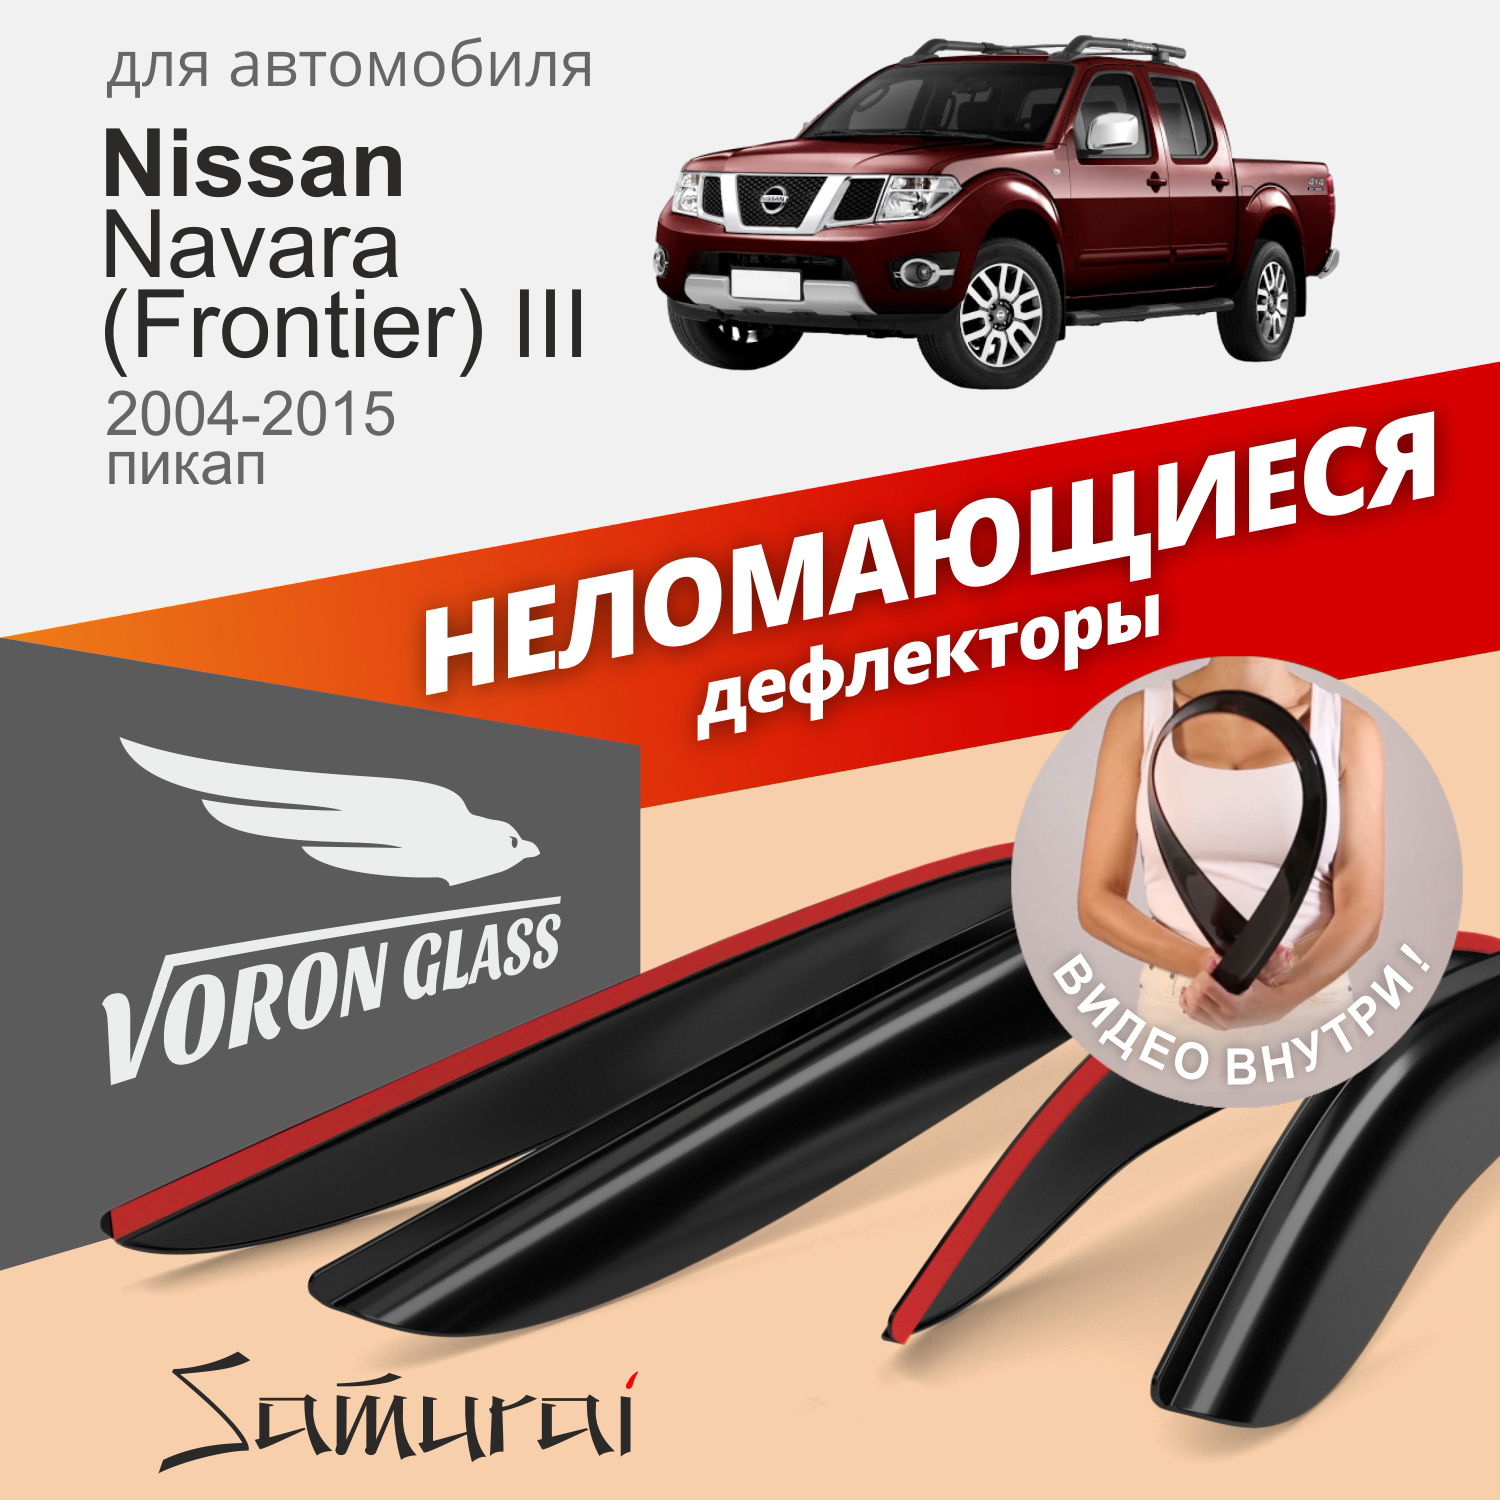 Дефлекторы VG Samurai для Nissan Navara(Frontier) Crew Cab 3 2004-2015/пикап/накладные/4шт